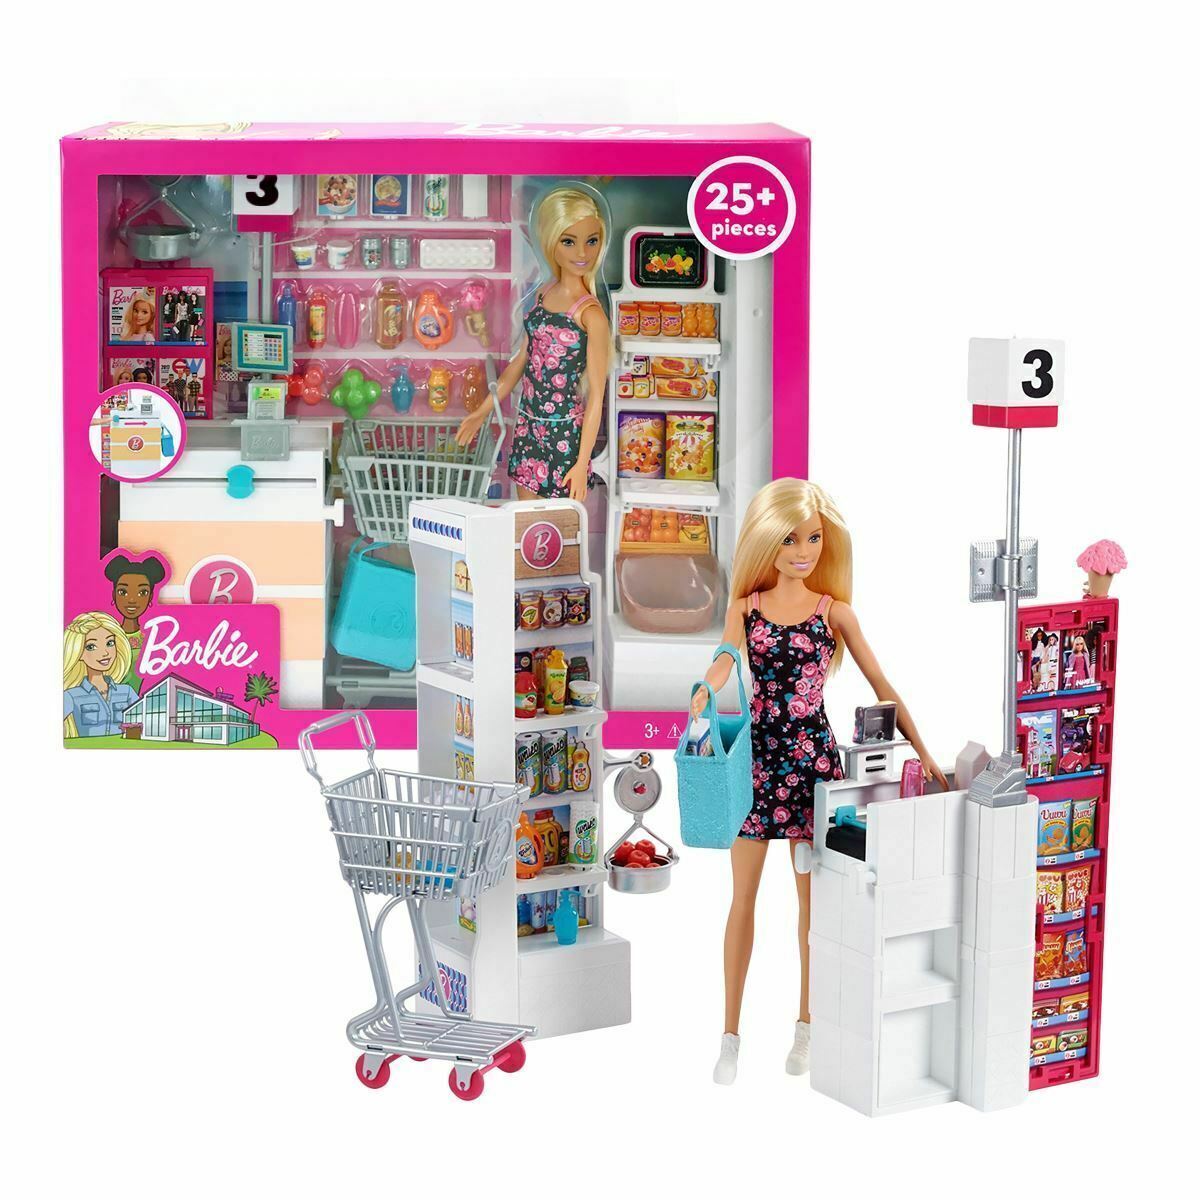 Большой набор кукол. Набор игровой Barbie супермаркет frp01. Набор Barbie frp01 супермаркет. Игровой набор Barbie frp01. Набор Barbie продуктовый магазин Малибу, 29 см, ckp77.